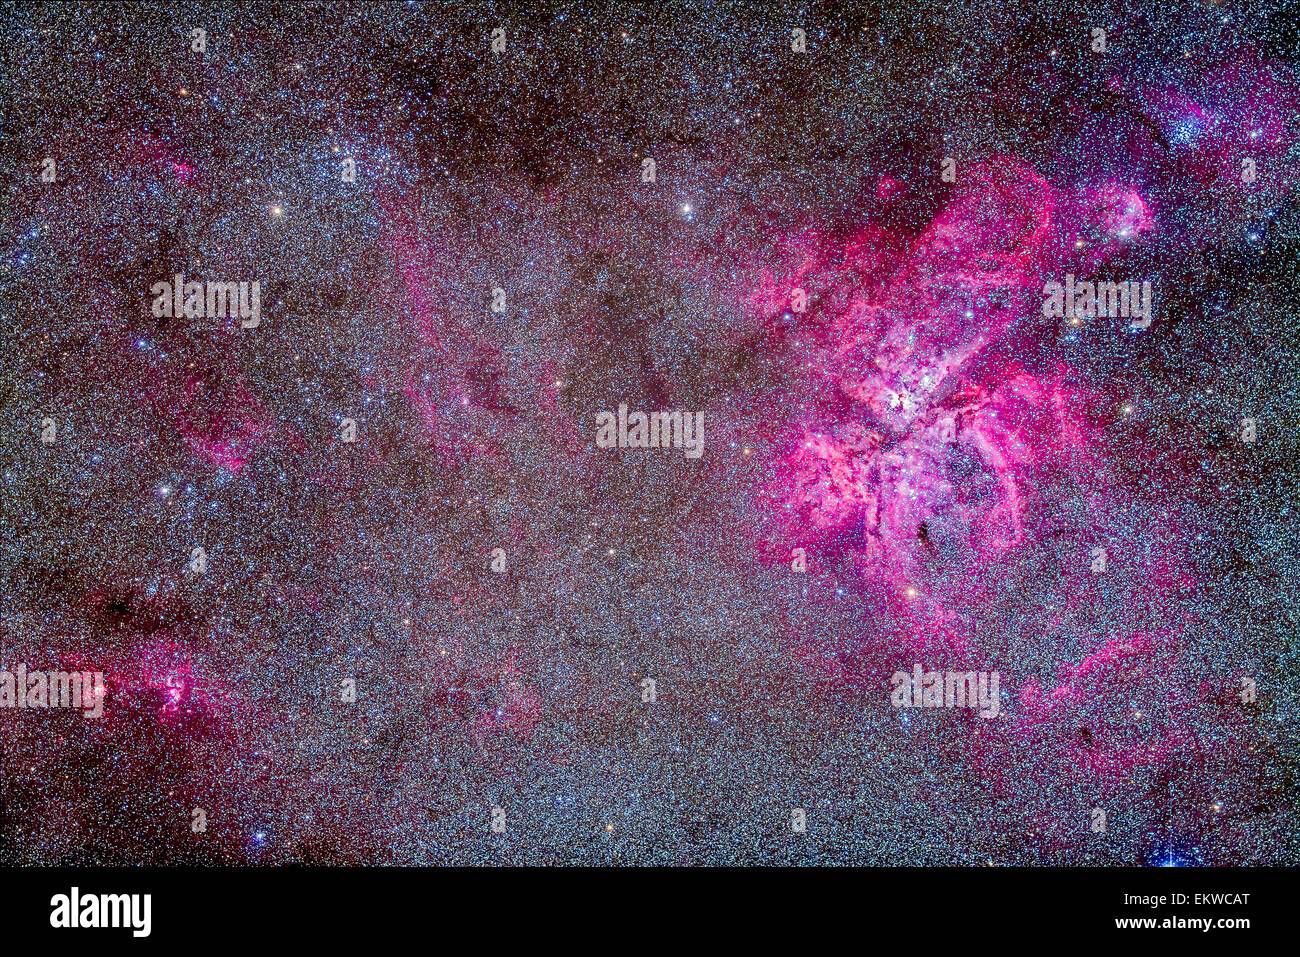 La nébuleuse Carina (NGC 3372) et les clusters. À l'angle supérieur gauche est NGC 3532, le cluster de football. À l'angle supérieur droit de l'i Banque D'Images